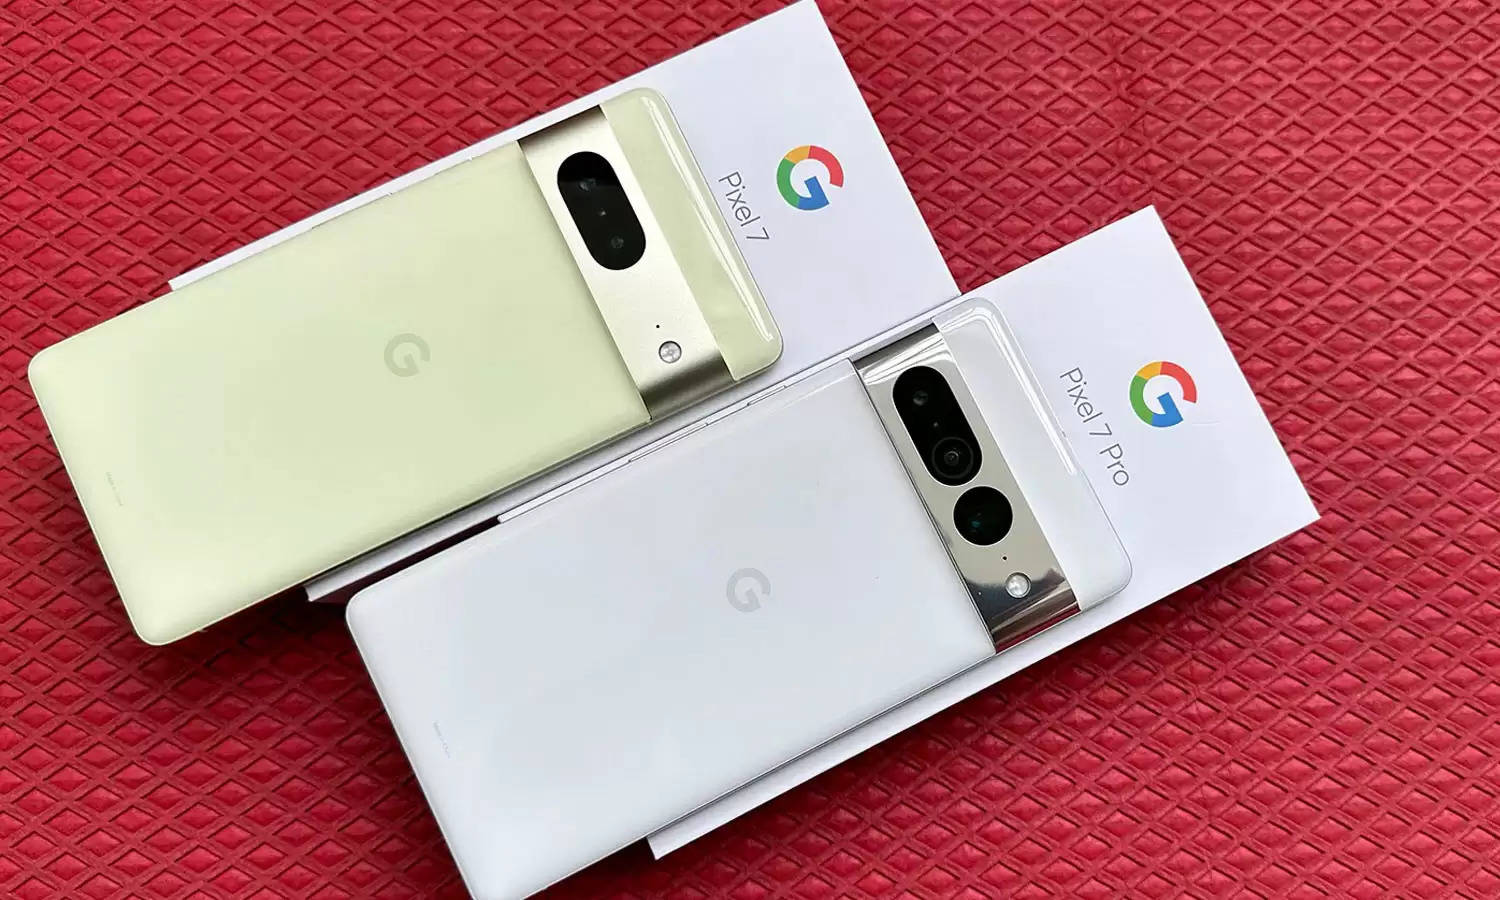 Google Pixel 7A : 11 मई को Market में लॉन्च होगा Google का ये Smartphone, इतनी कीमत में मिलेंगे ये सब फीचर्स